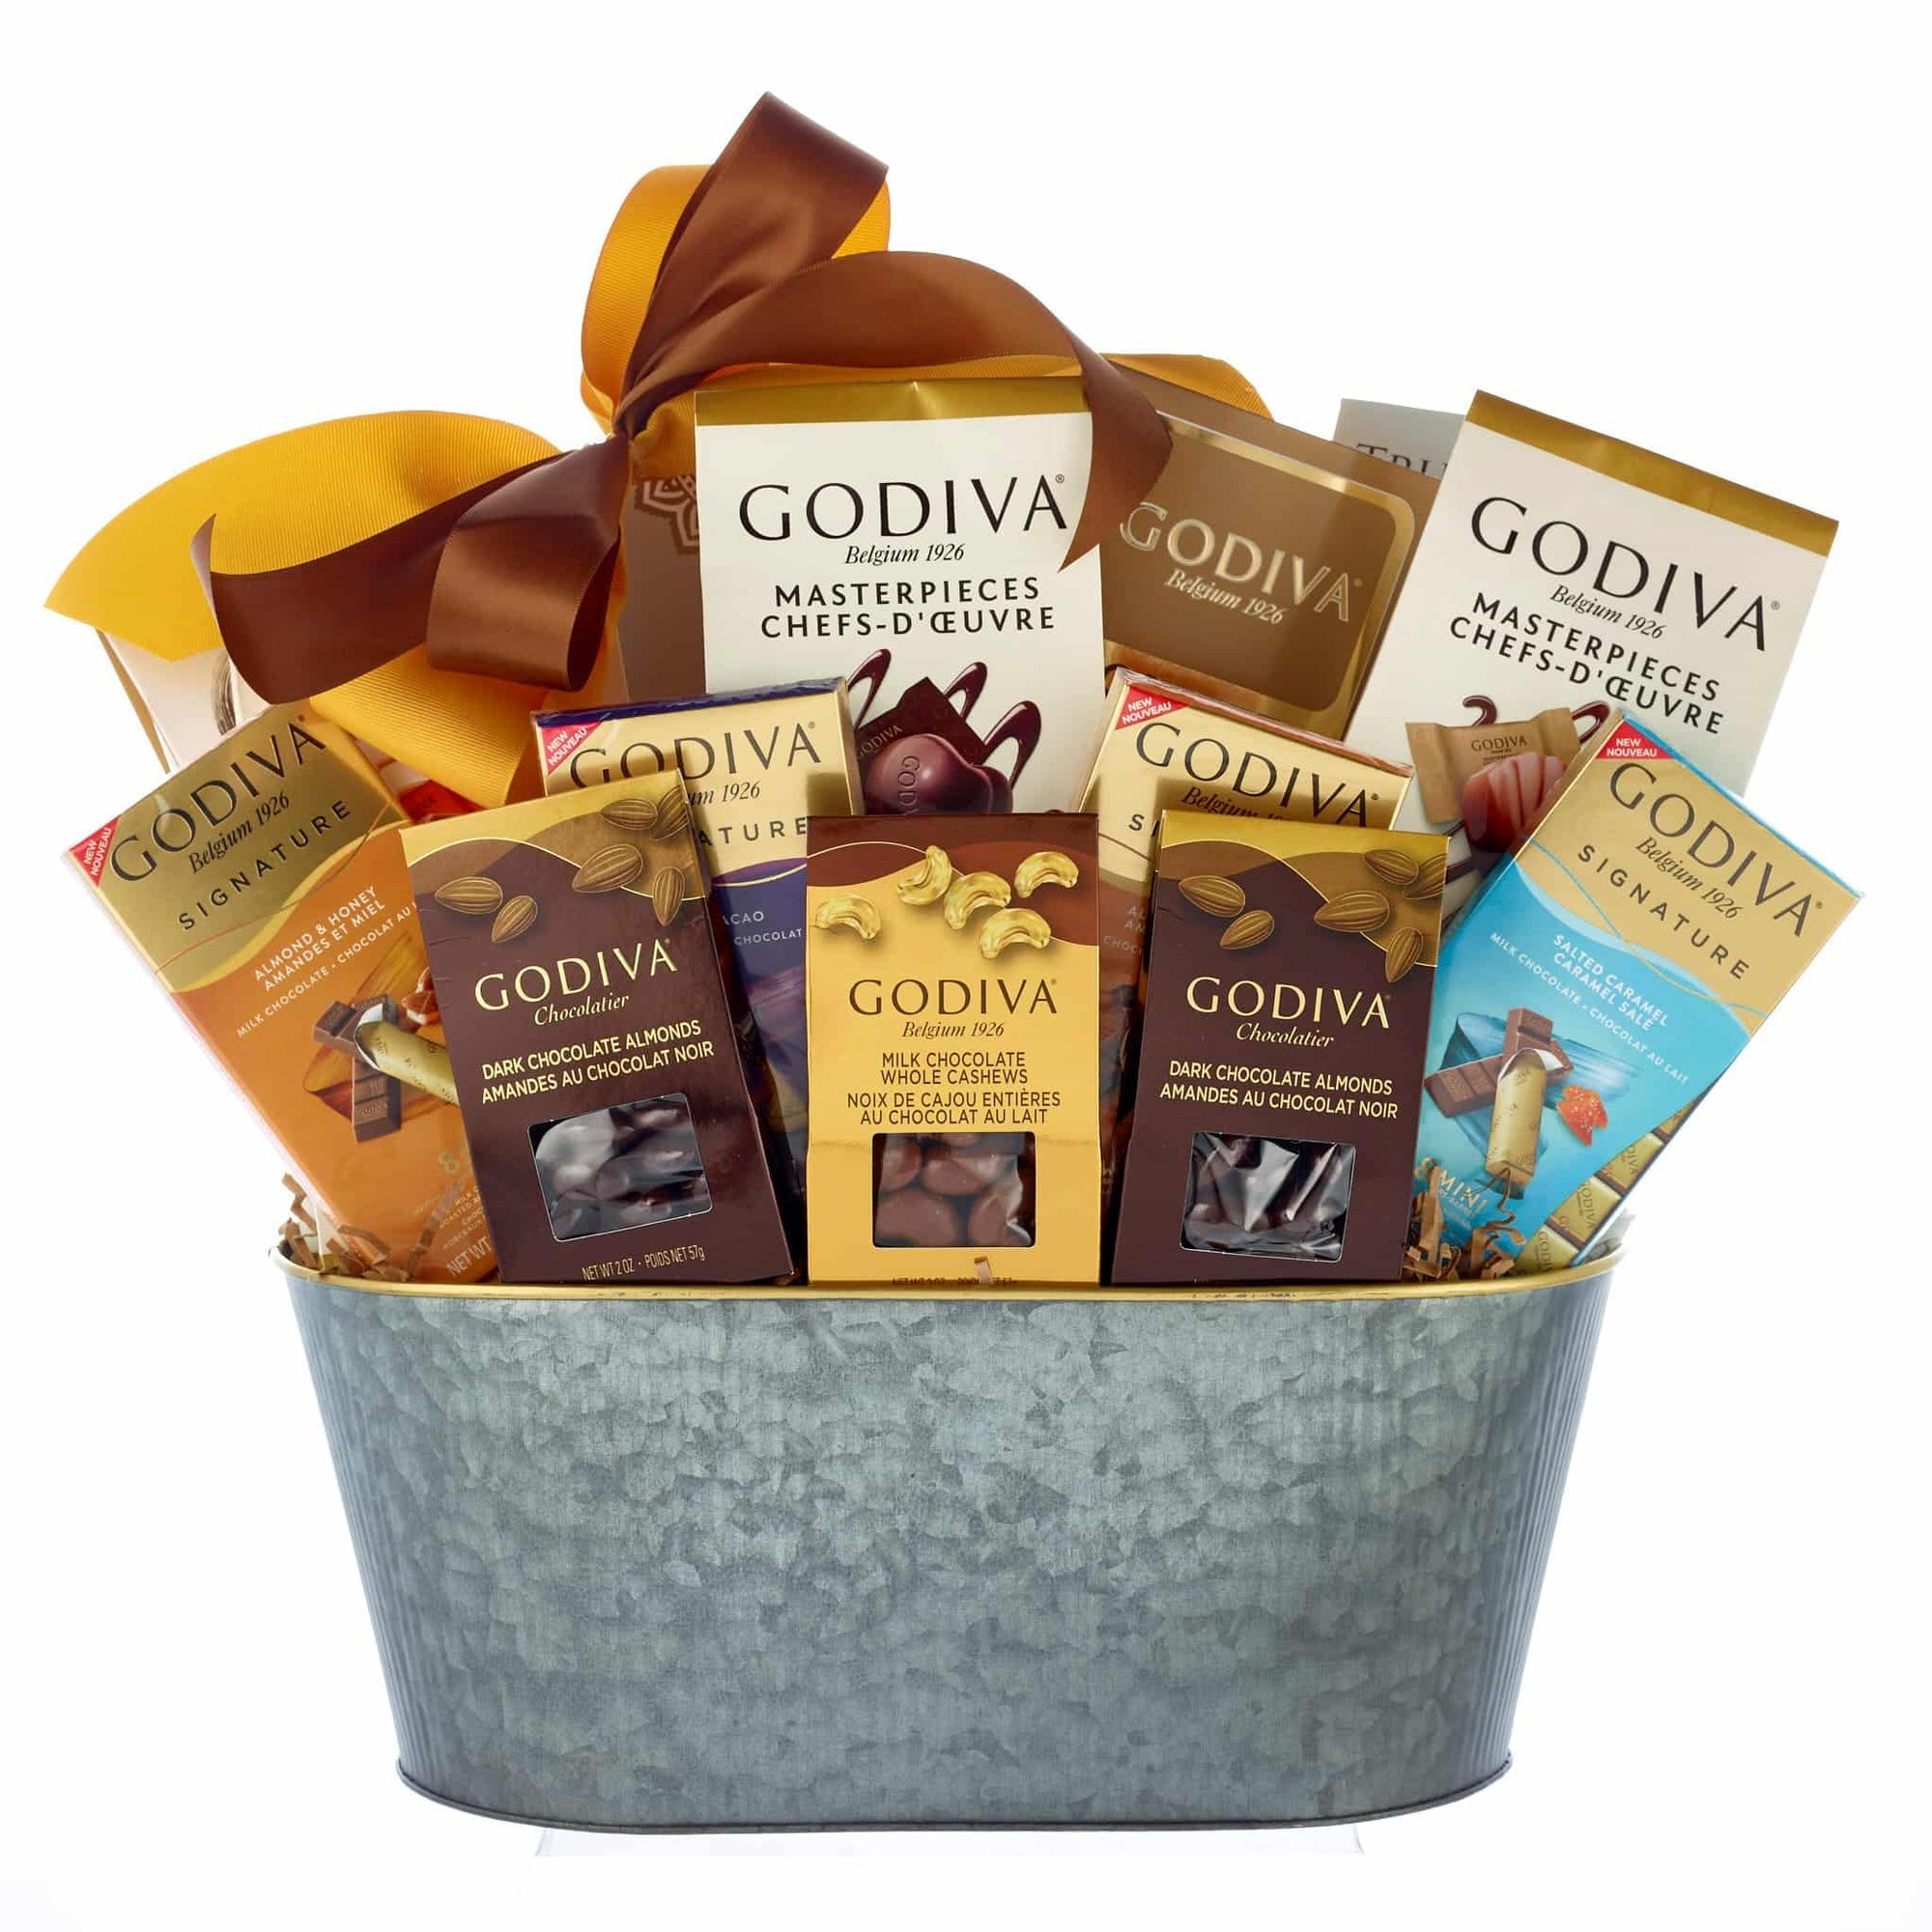 Premium Godiva chocolates for all occasions. 